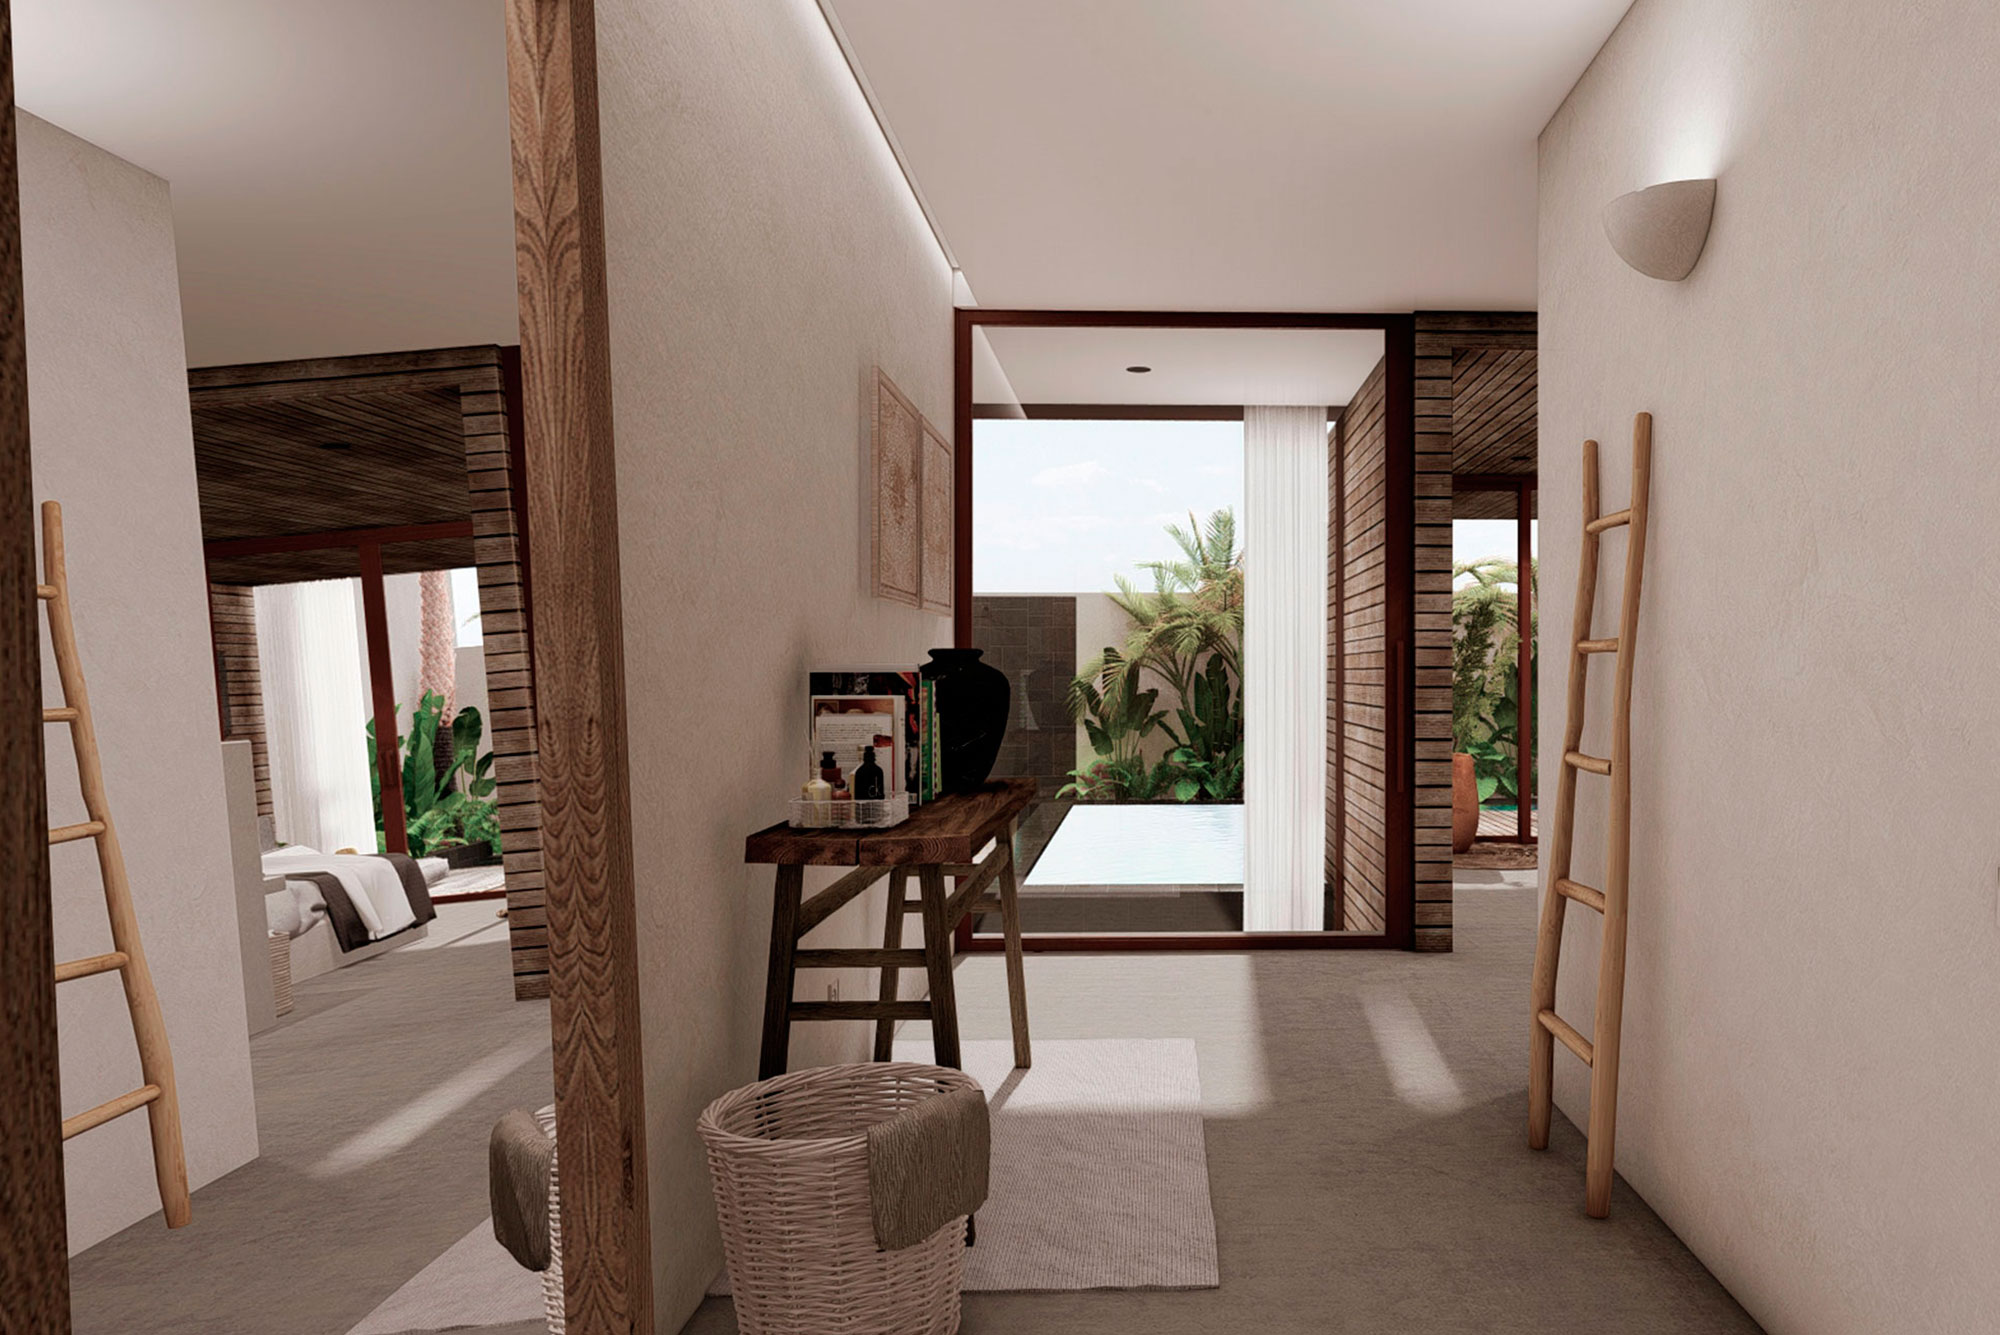 Proyecto interiorismo arquitectura vivienda estilo balines entrada habitación principal diseño pintura natural wabisabi